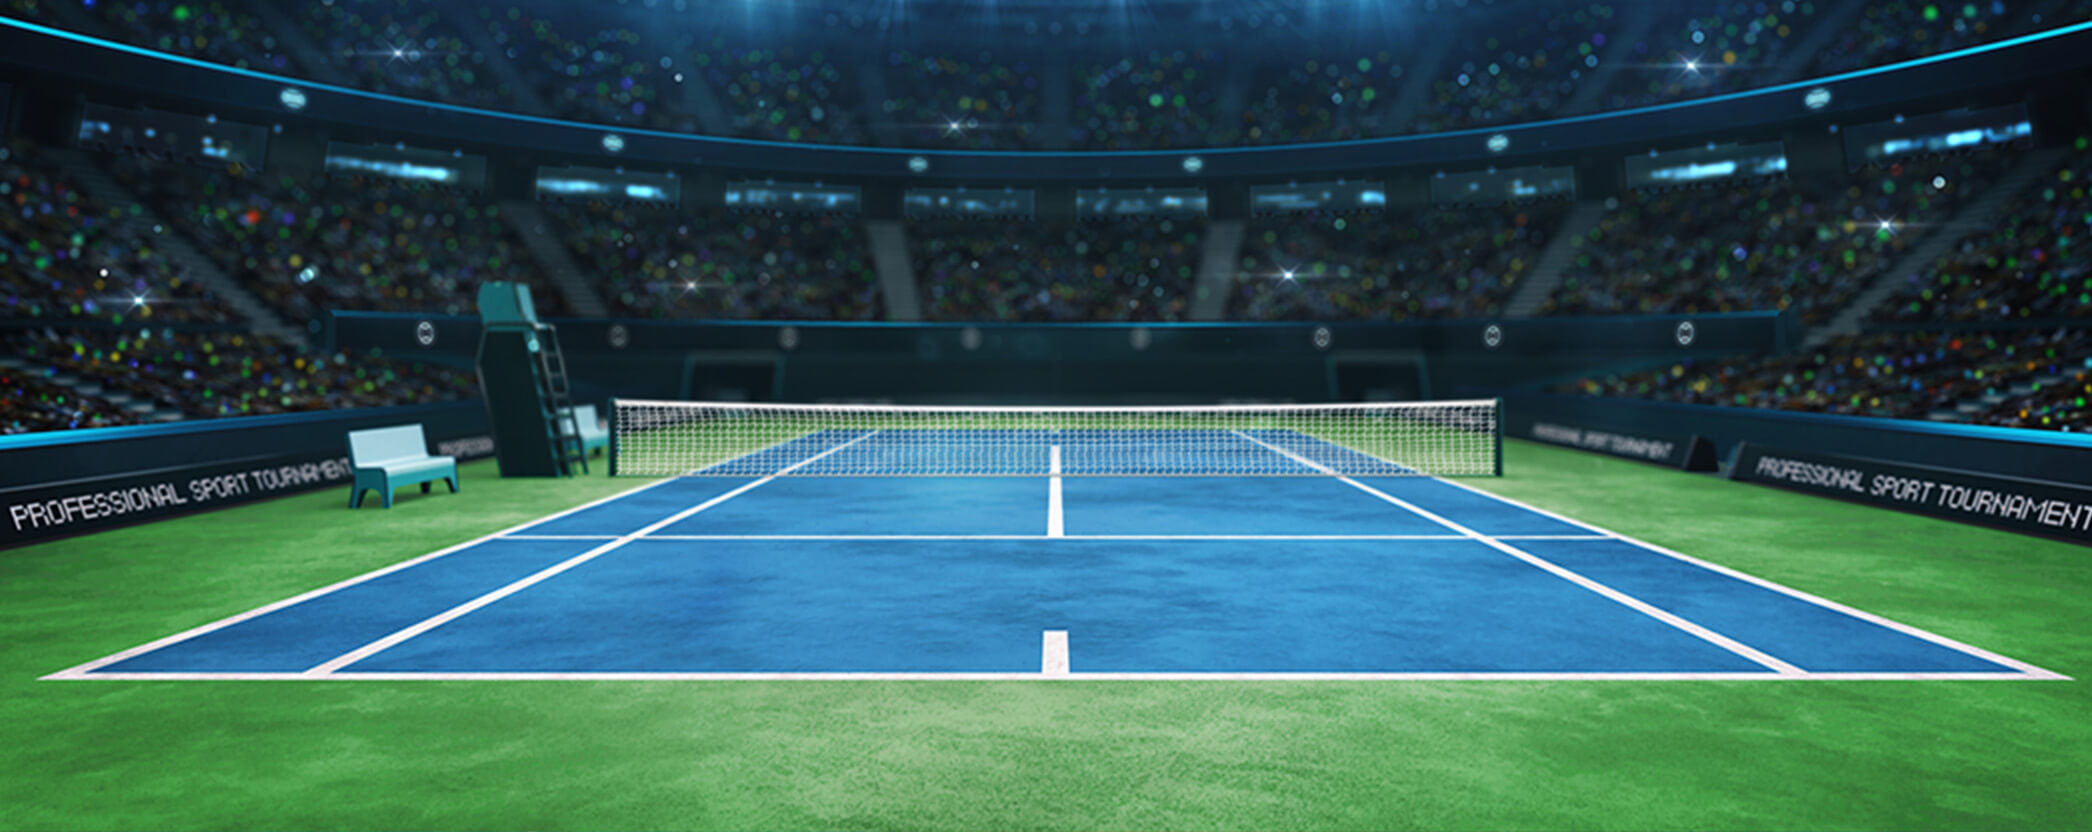 empty tennis court in a stadium